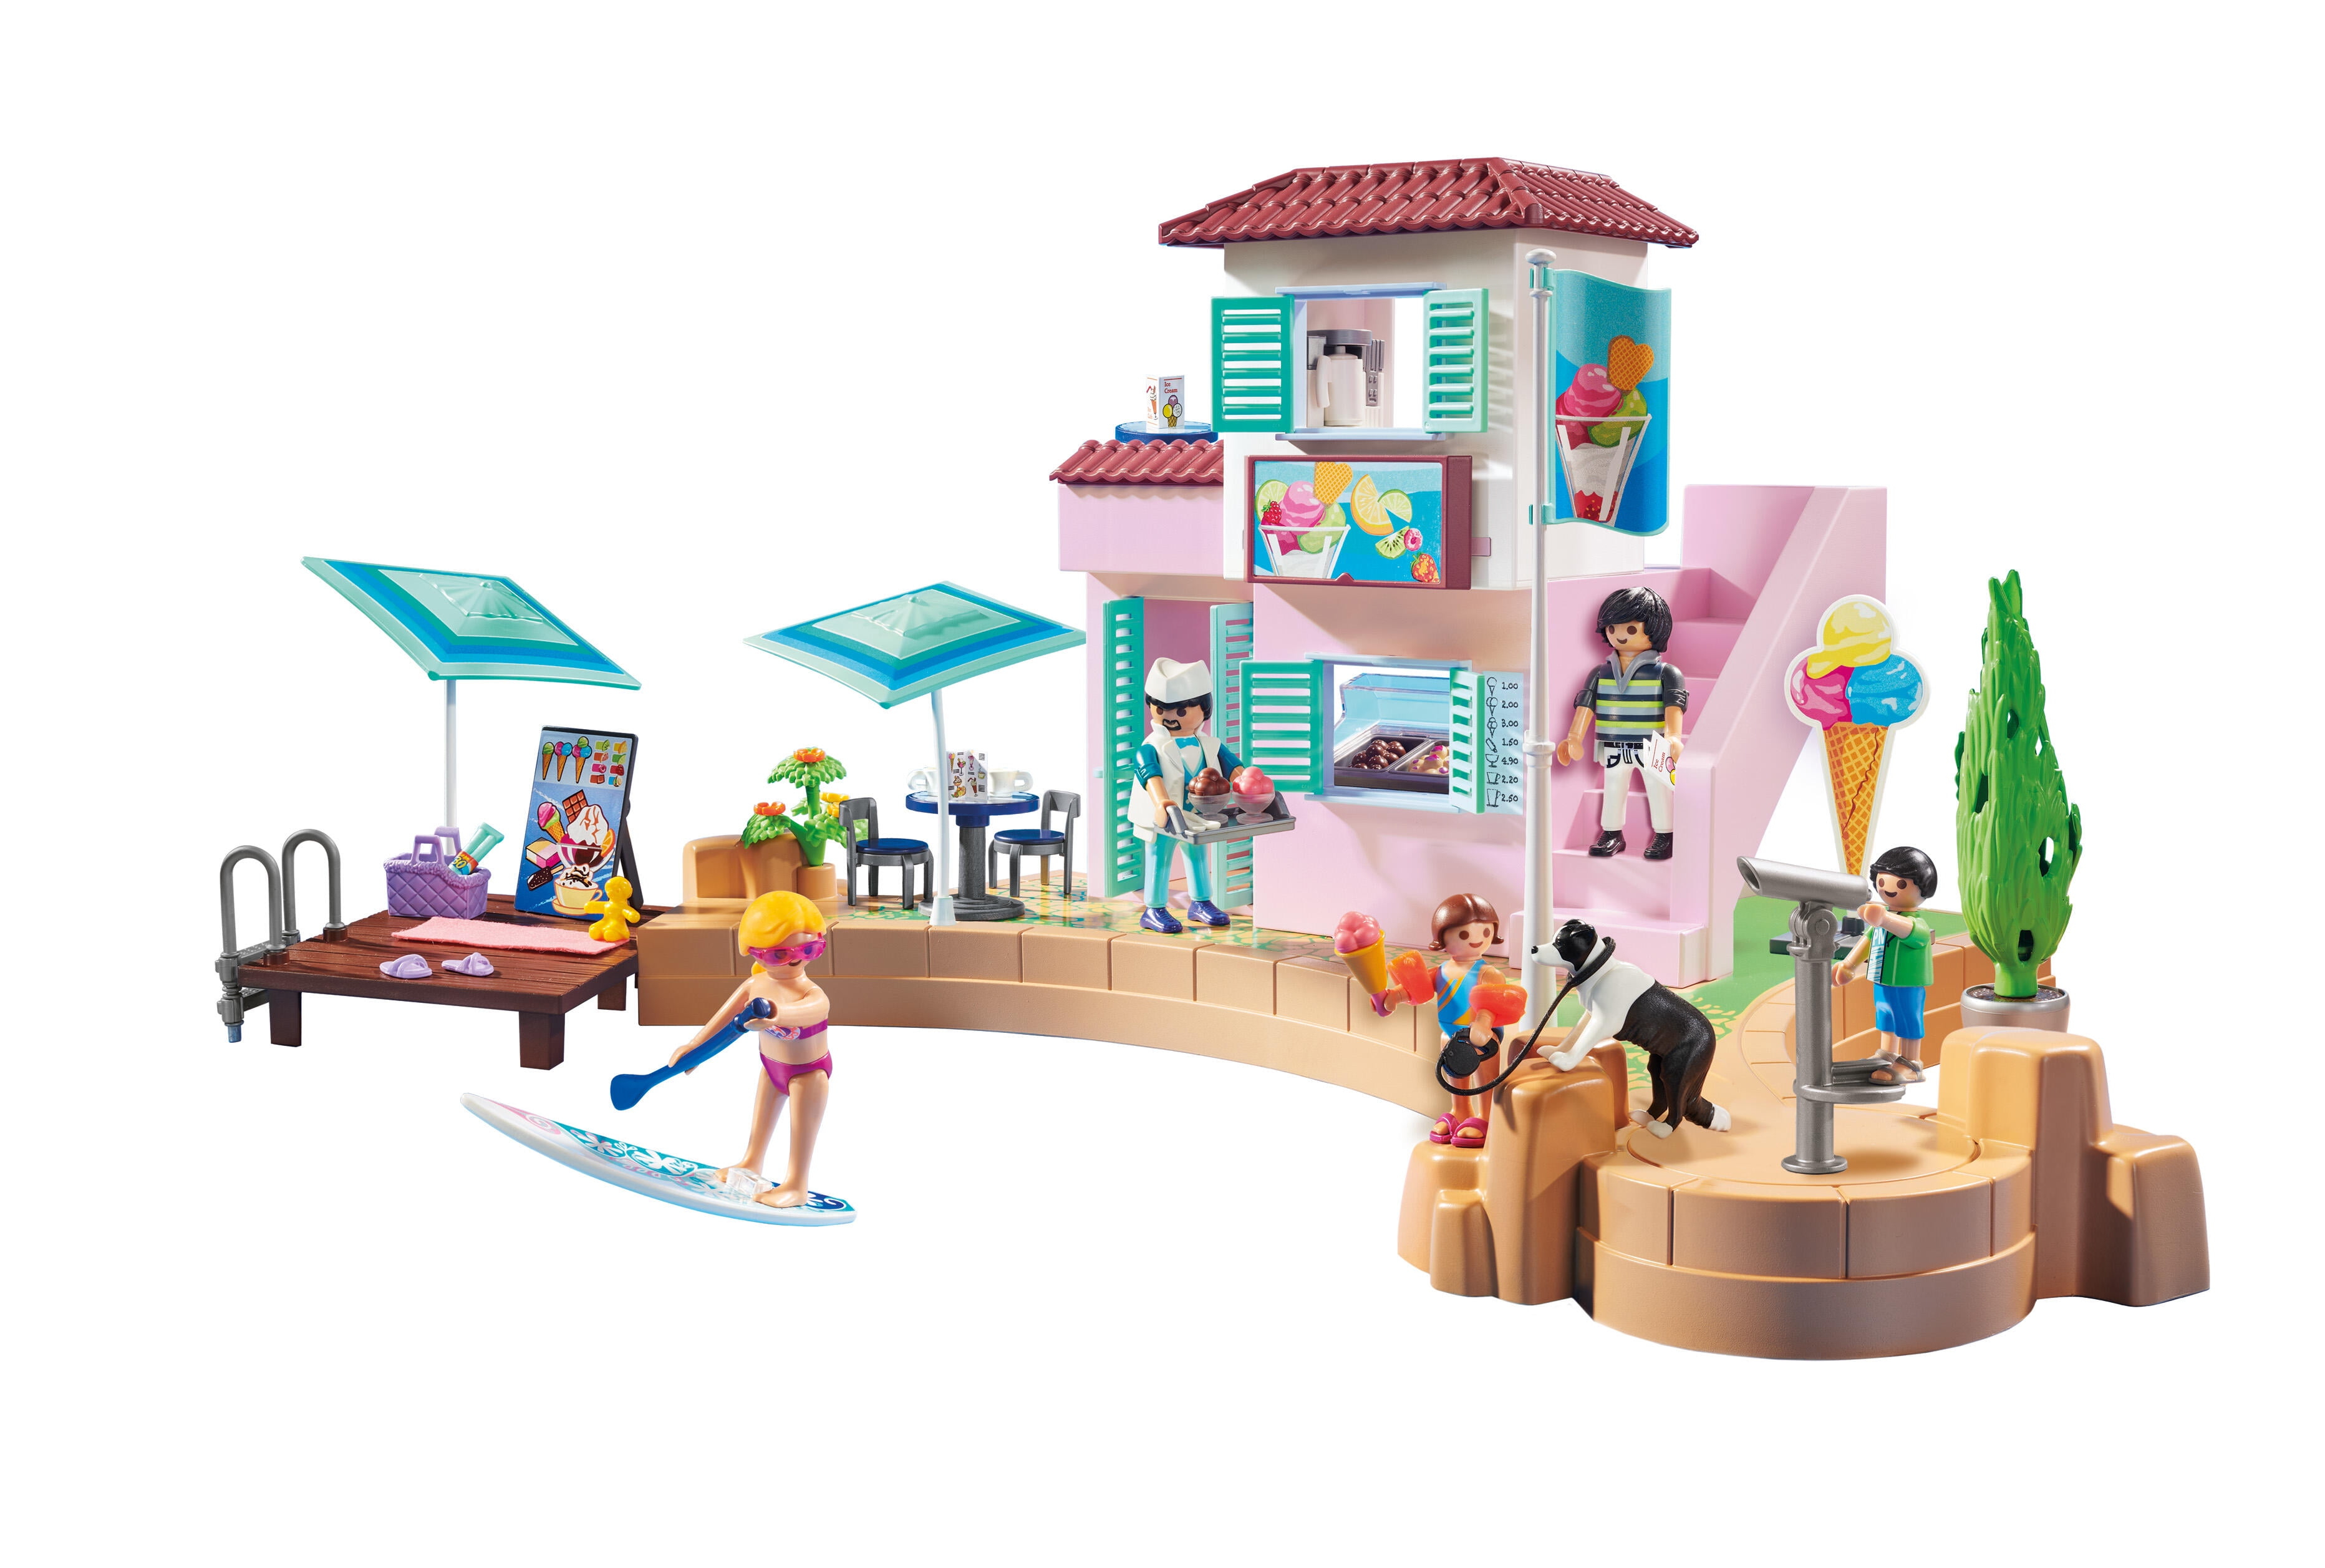 Playmobil hielo Piruletas/Lolly & Galletas Comida Parque Casa Tienda Supermercado-Nuevo 